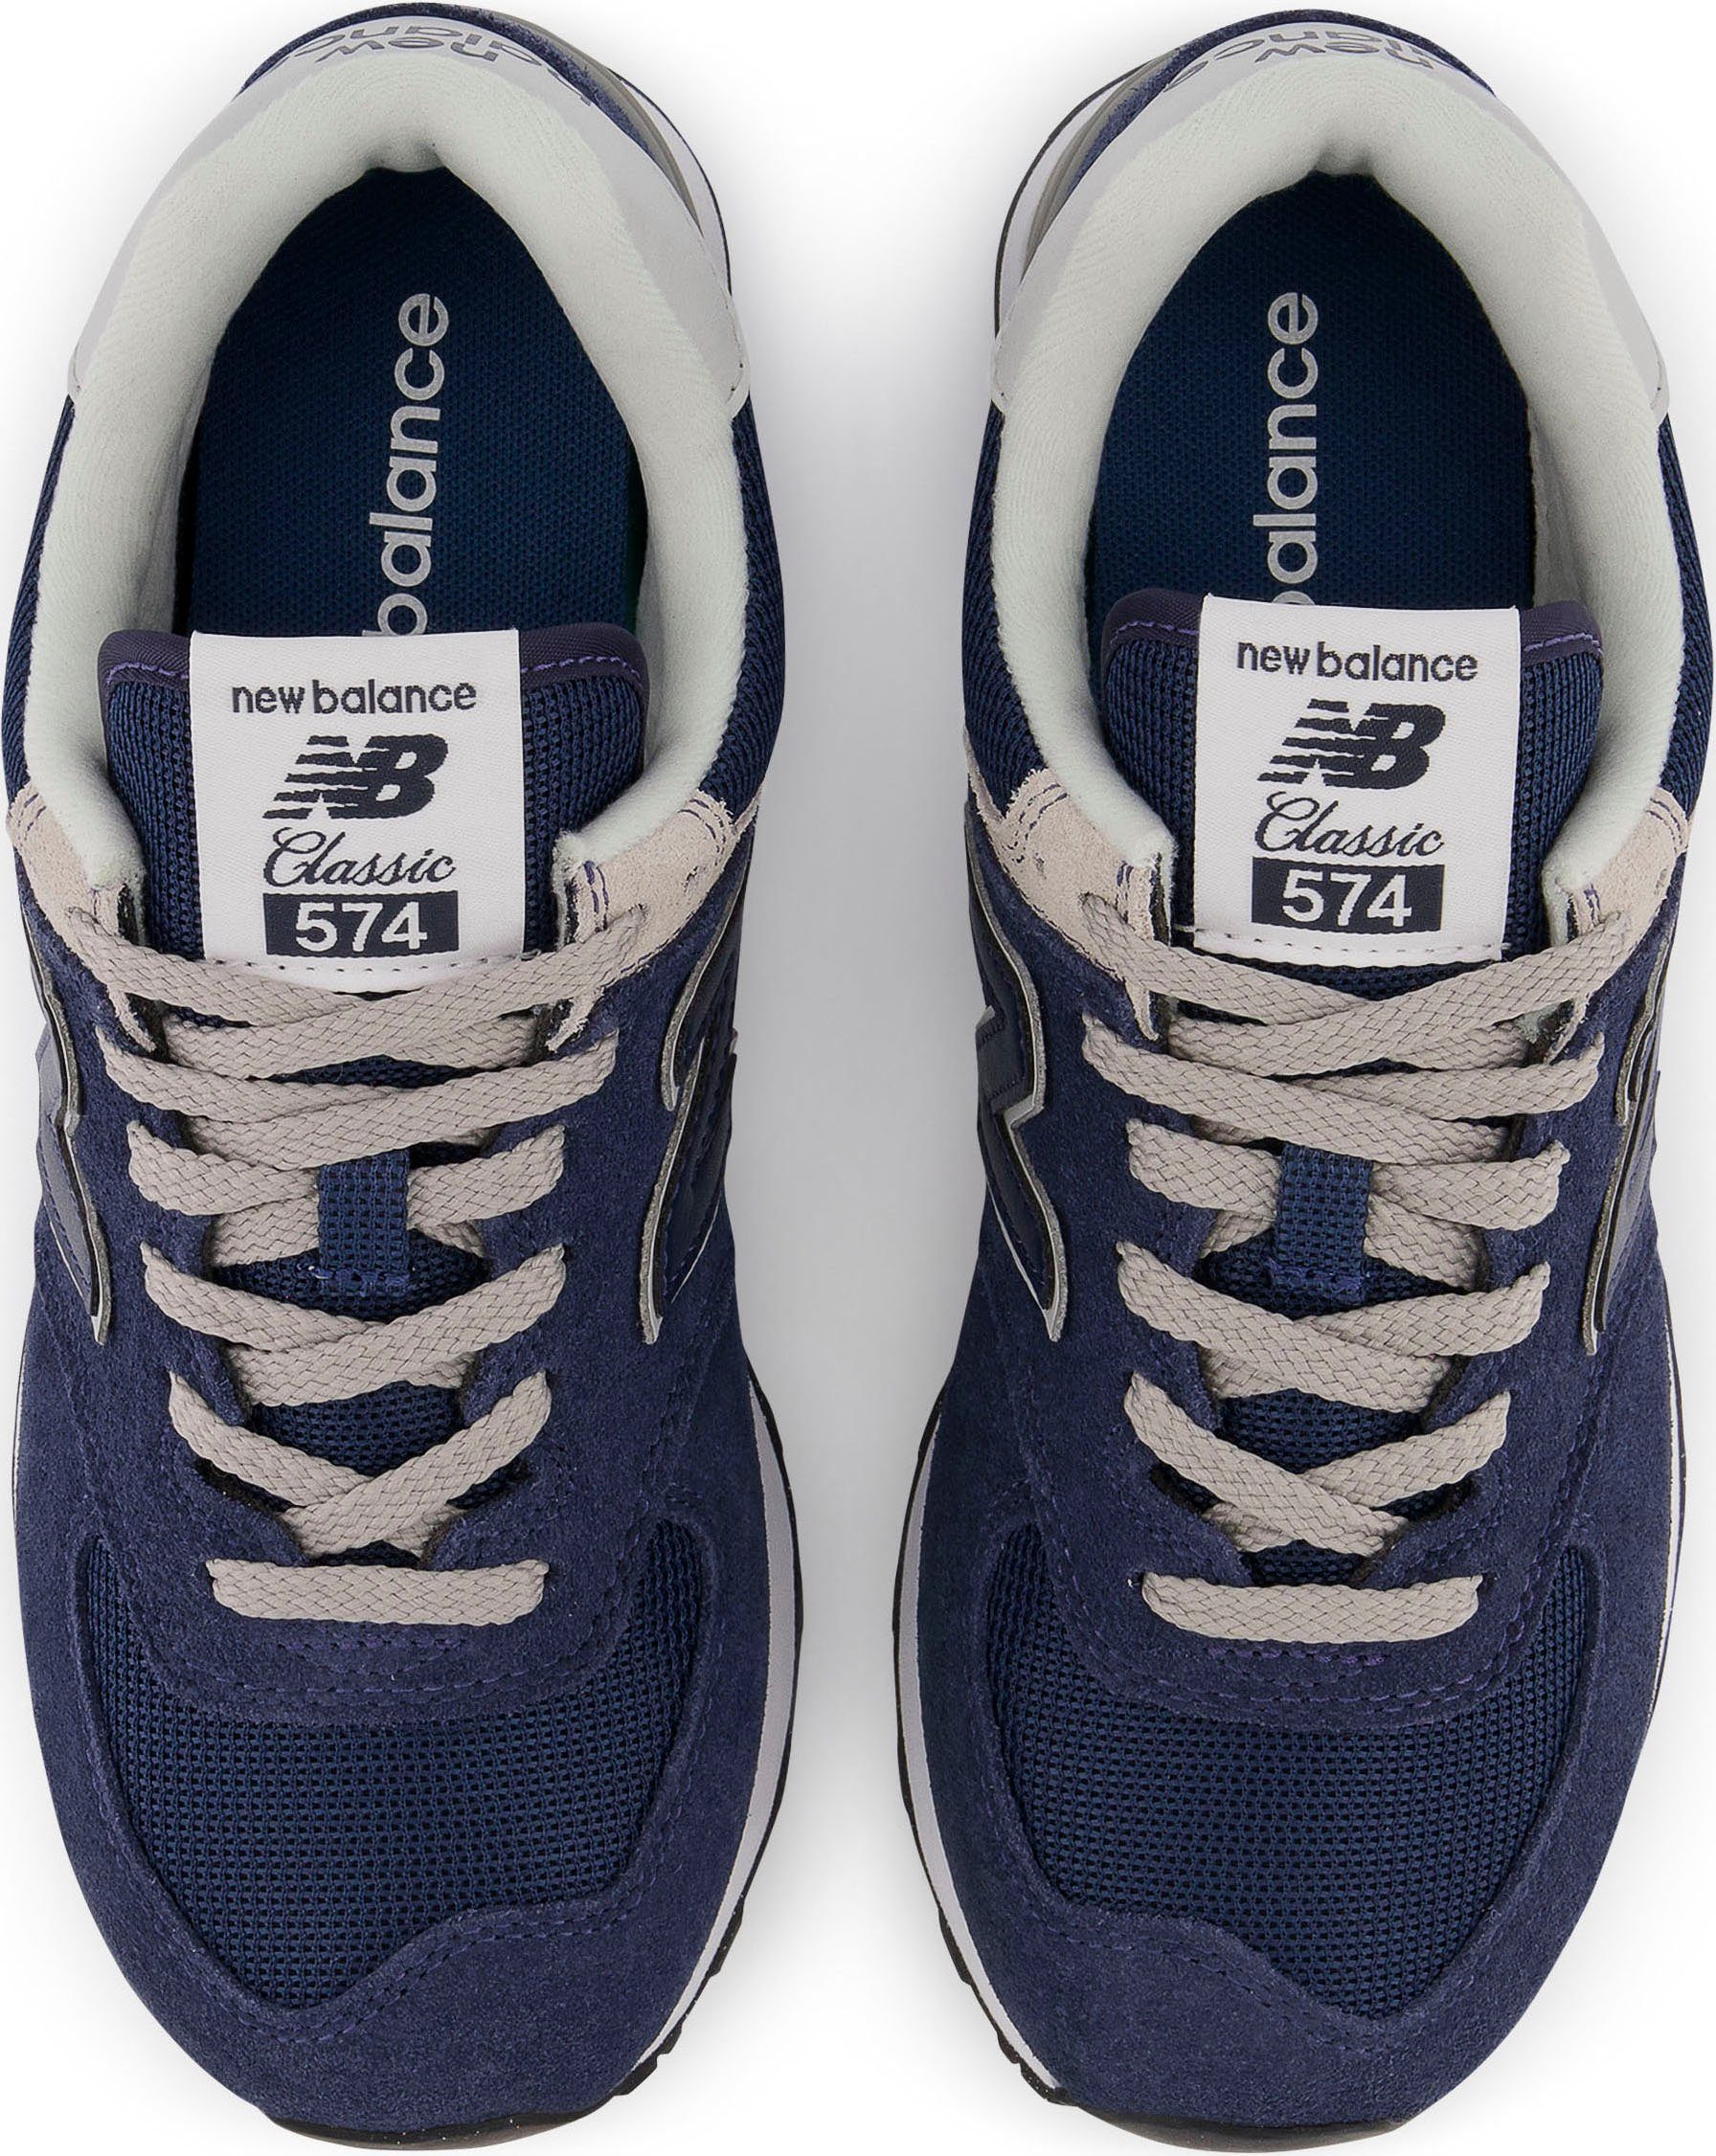 Sneaker Balance Core navy-grau-weiß WL574 New